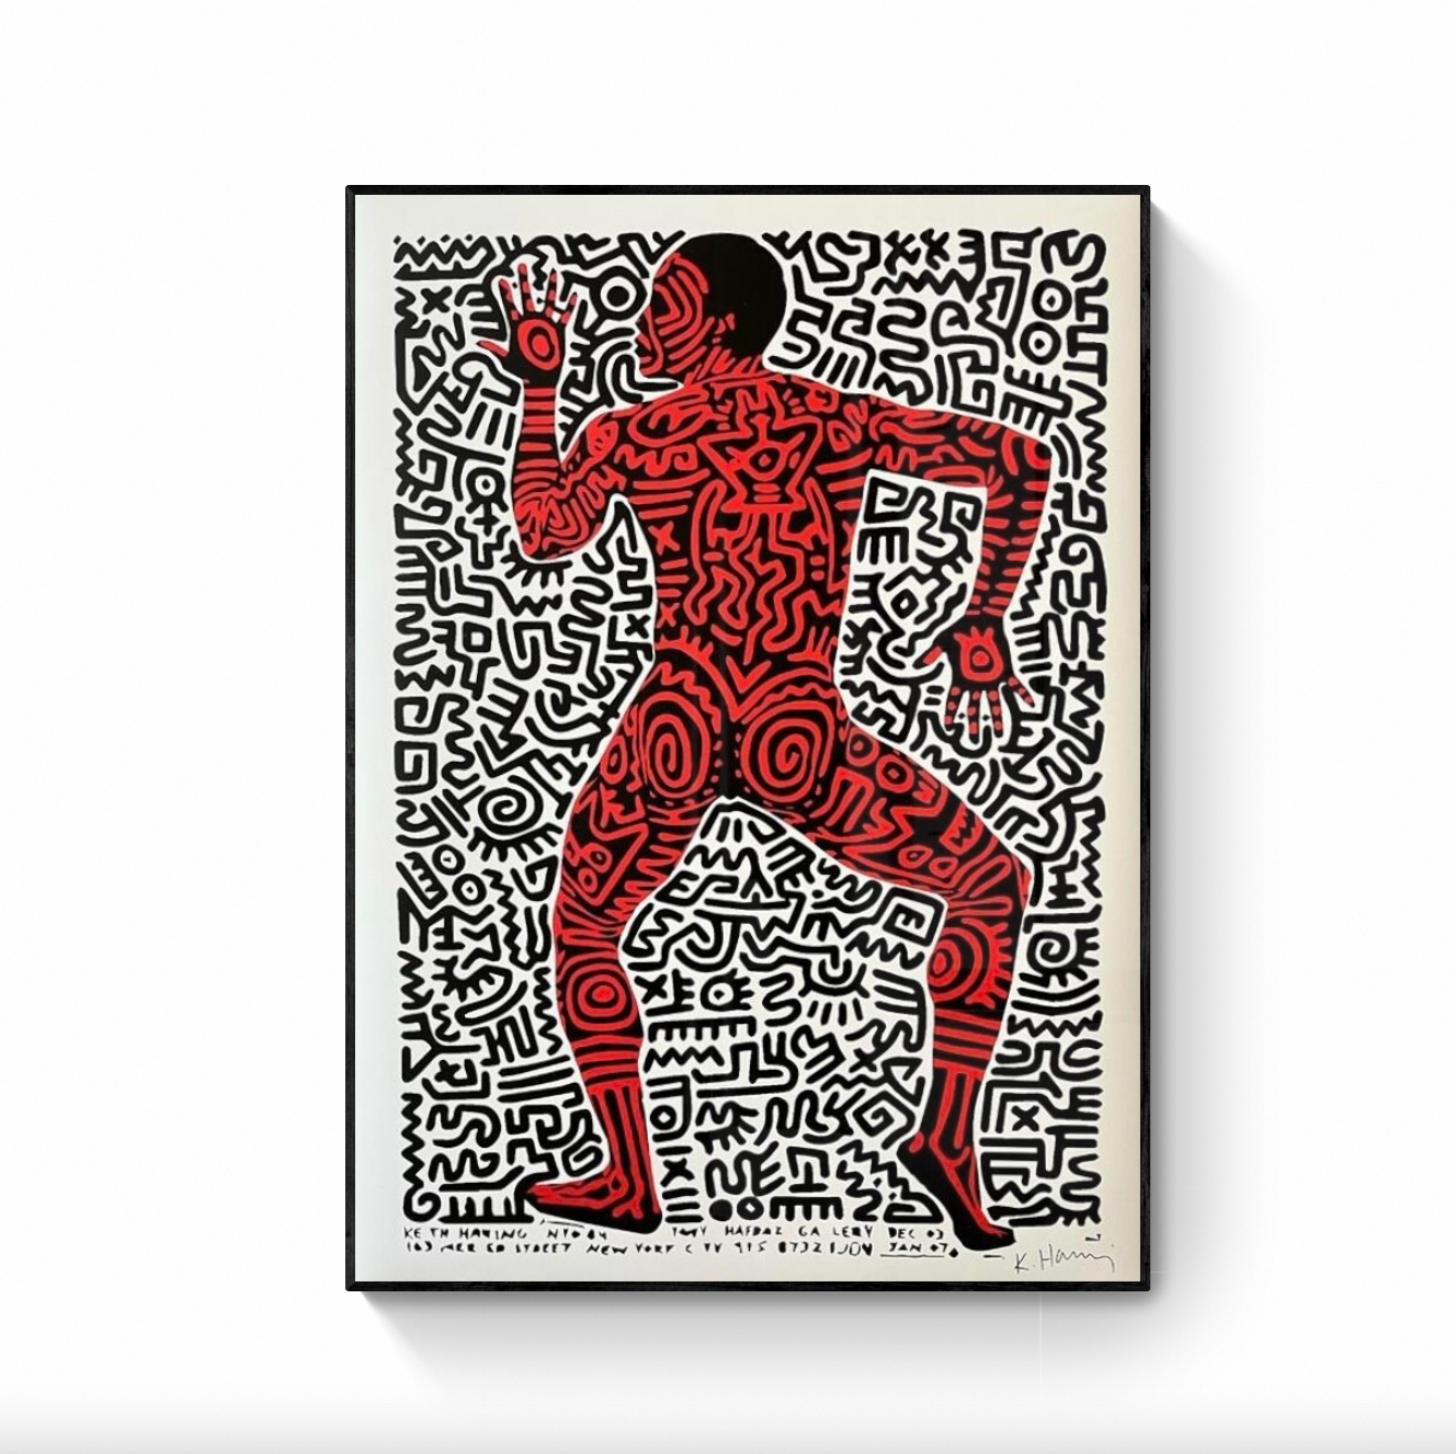 【特売】Keith Haring、The Story of Jason 129、希少画集画、新品額装付、choco その他